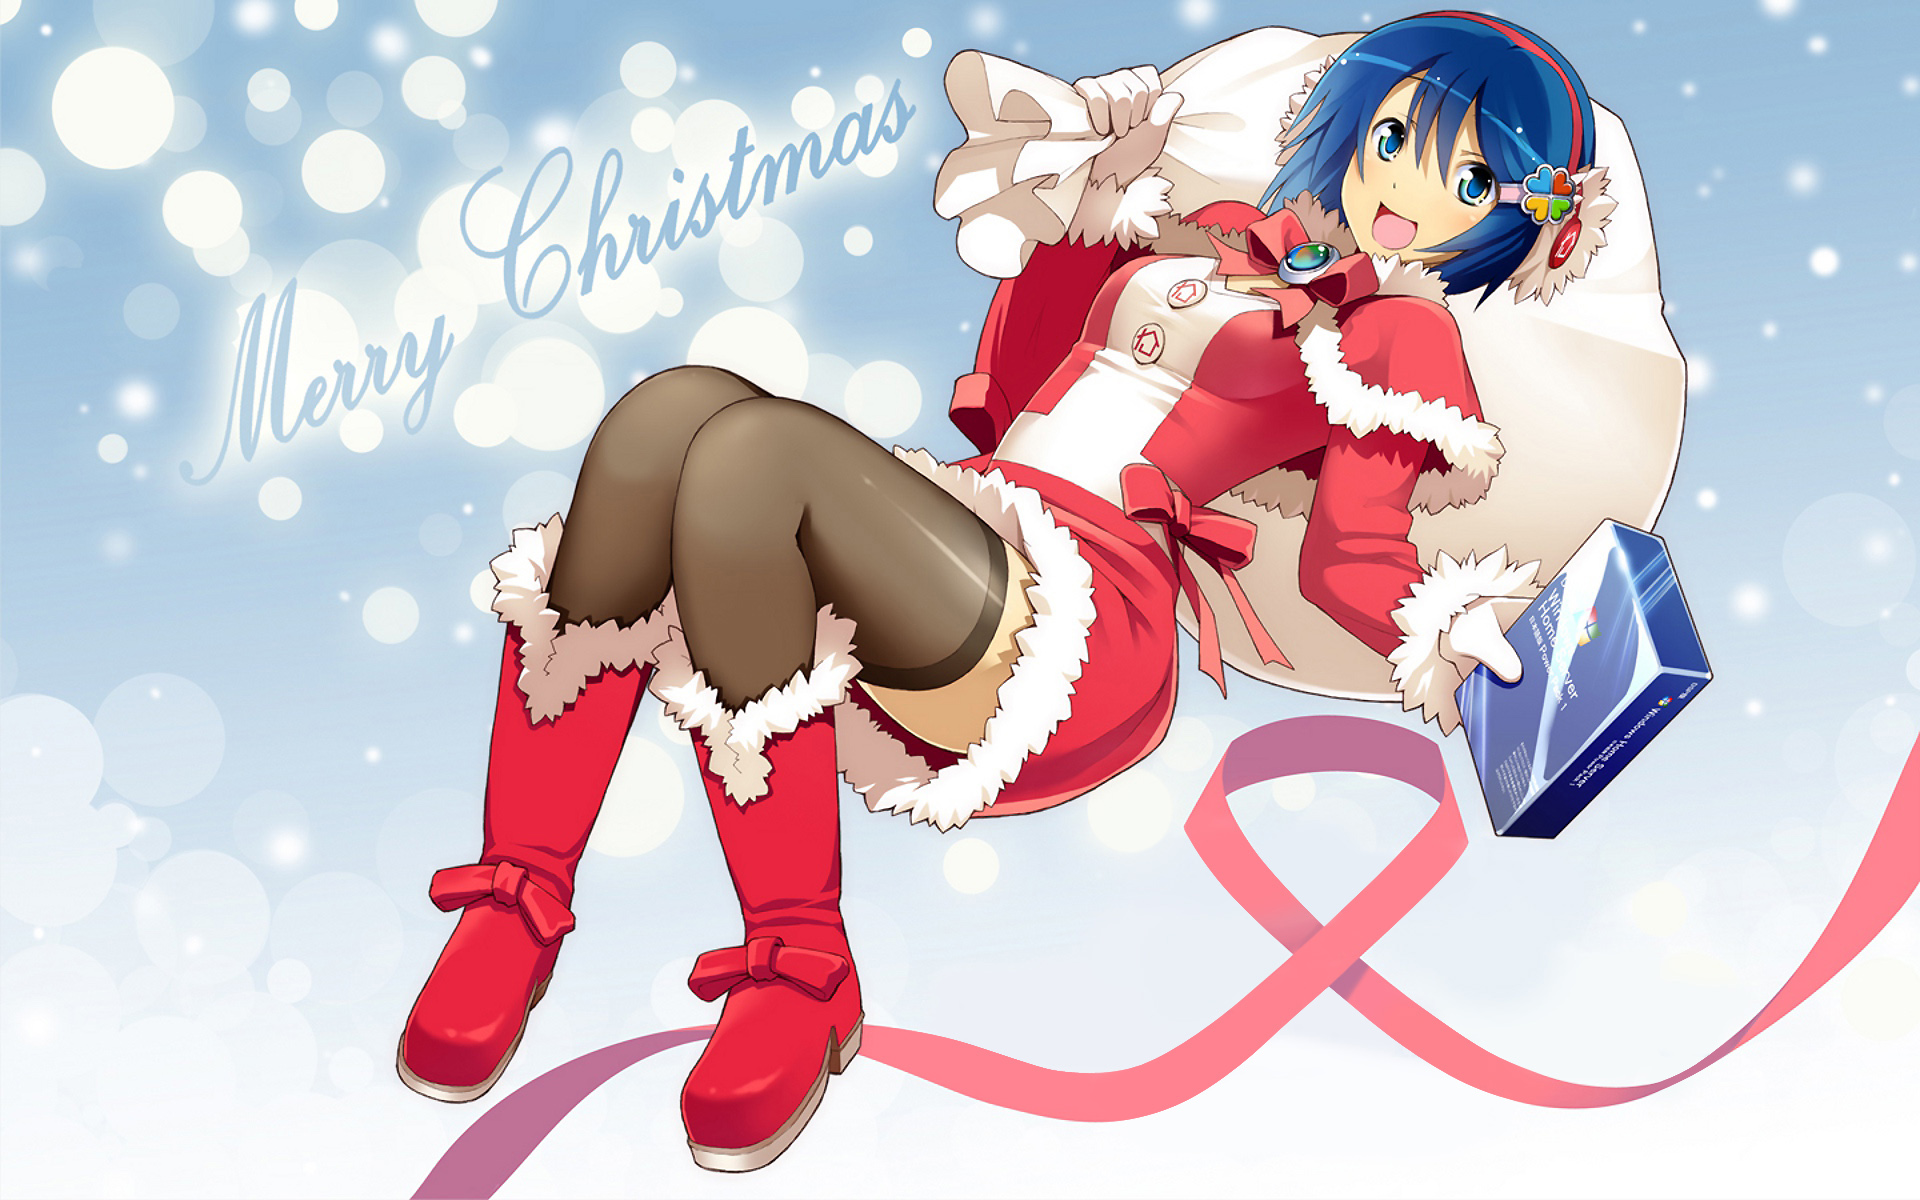 Bạn là một fan của dòng anime nhật bản? Hãy đến với chúng tôi để cùng trải nghiệm những hình ảnh Giáng Sinh vô cùng đáng yêu và dễ thương trong bộ Cute Anime Girl - Christmas Wallpapers HD. Hơn 20 hình nền được thiết kế độc đáo giúp bạn nâng cao tinh thần Giáng Sinh và thỏa sức cùng bạn bè chia sẻ những khoảnh khắc ấn tượng.